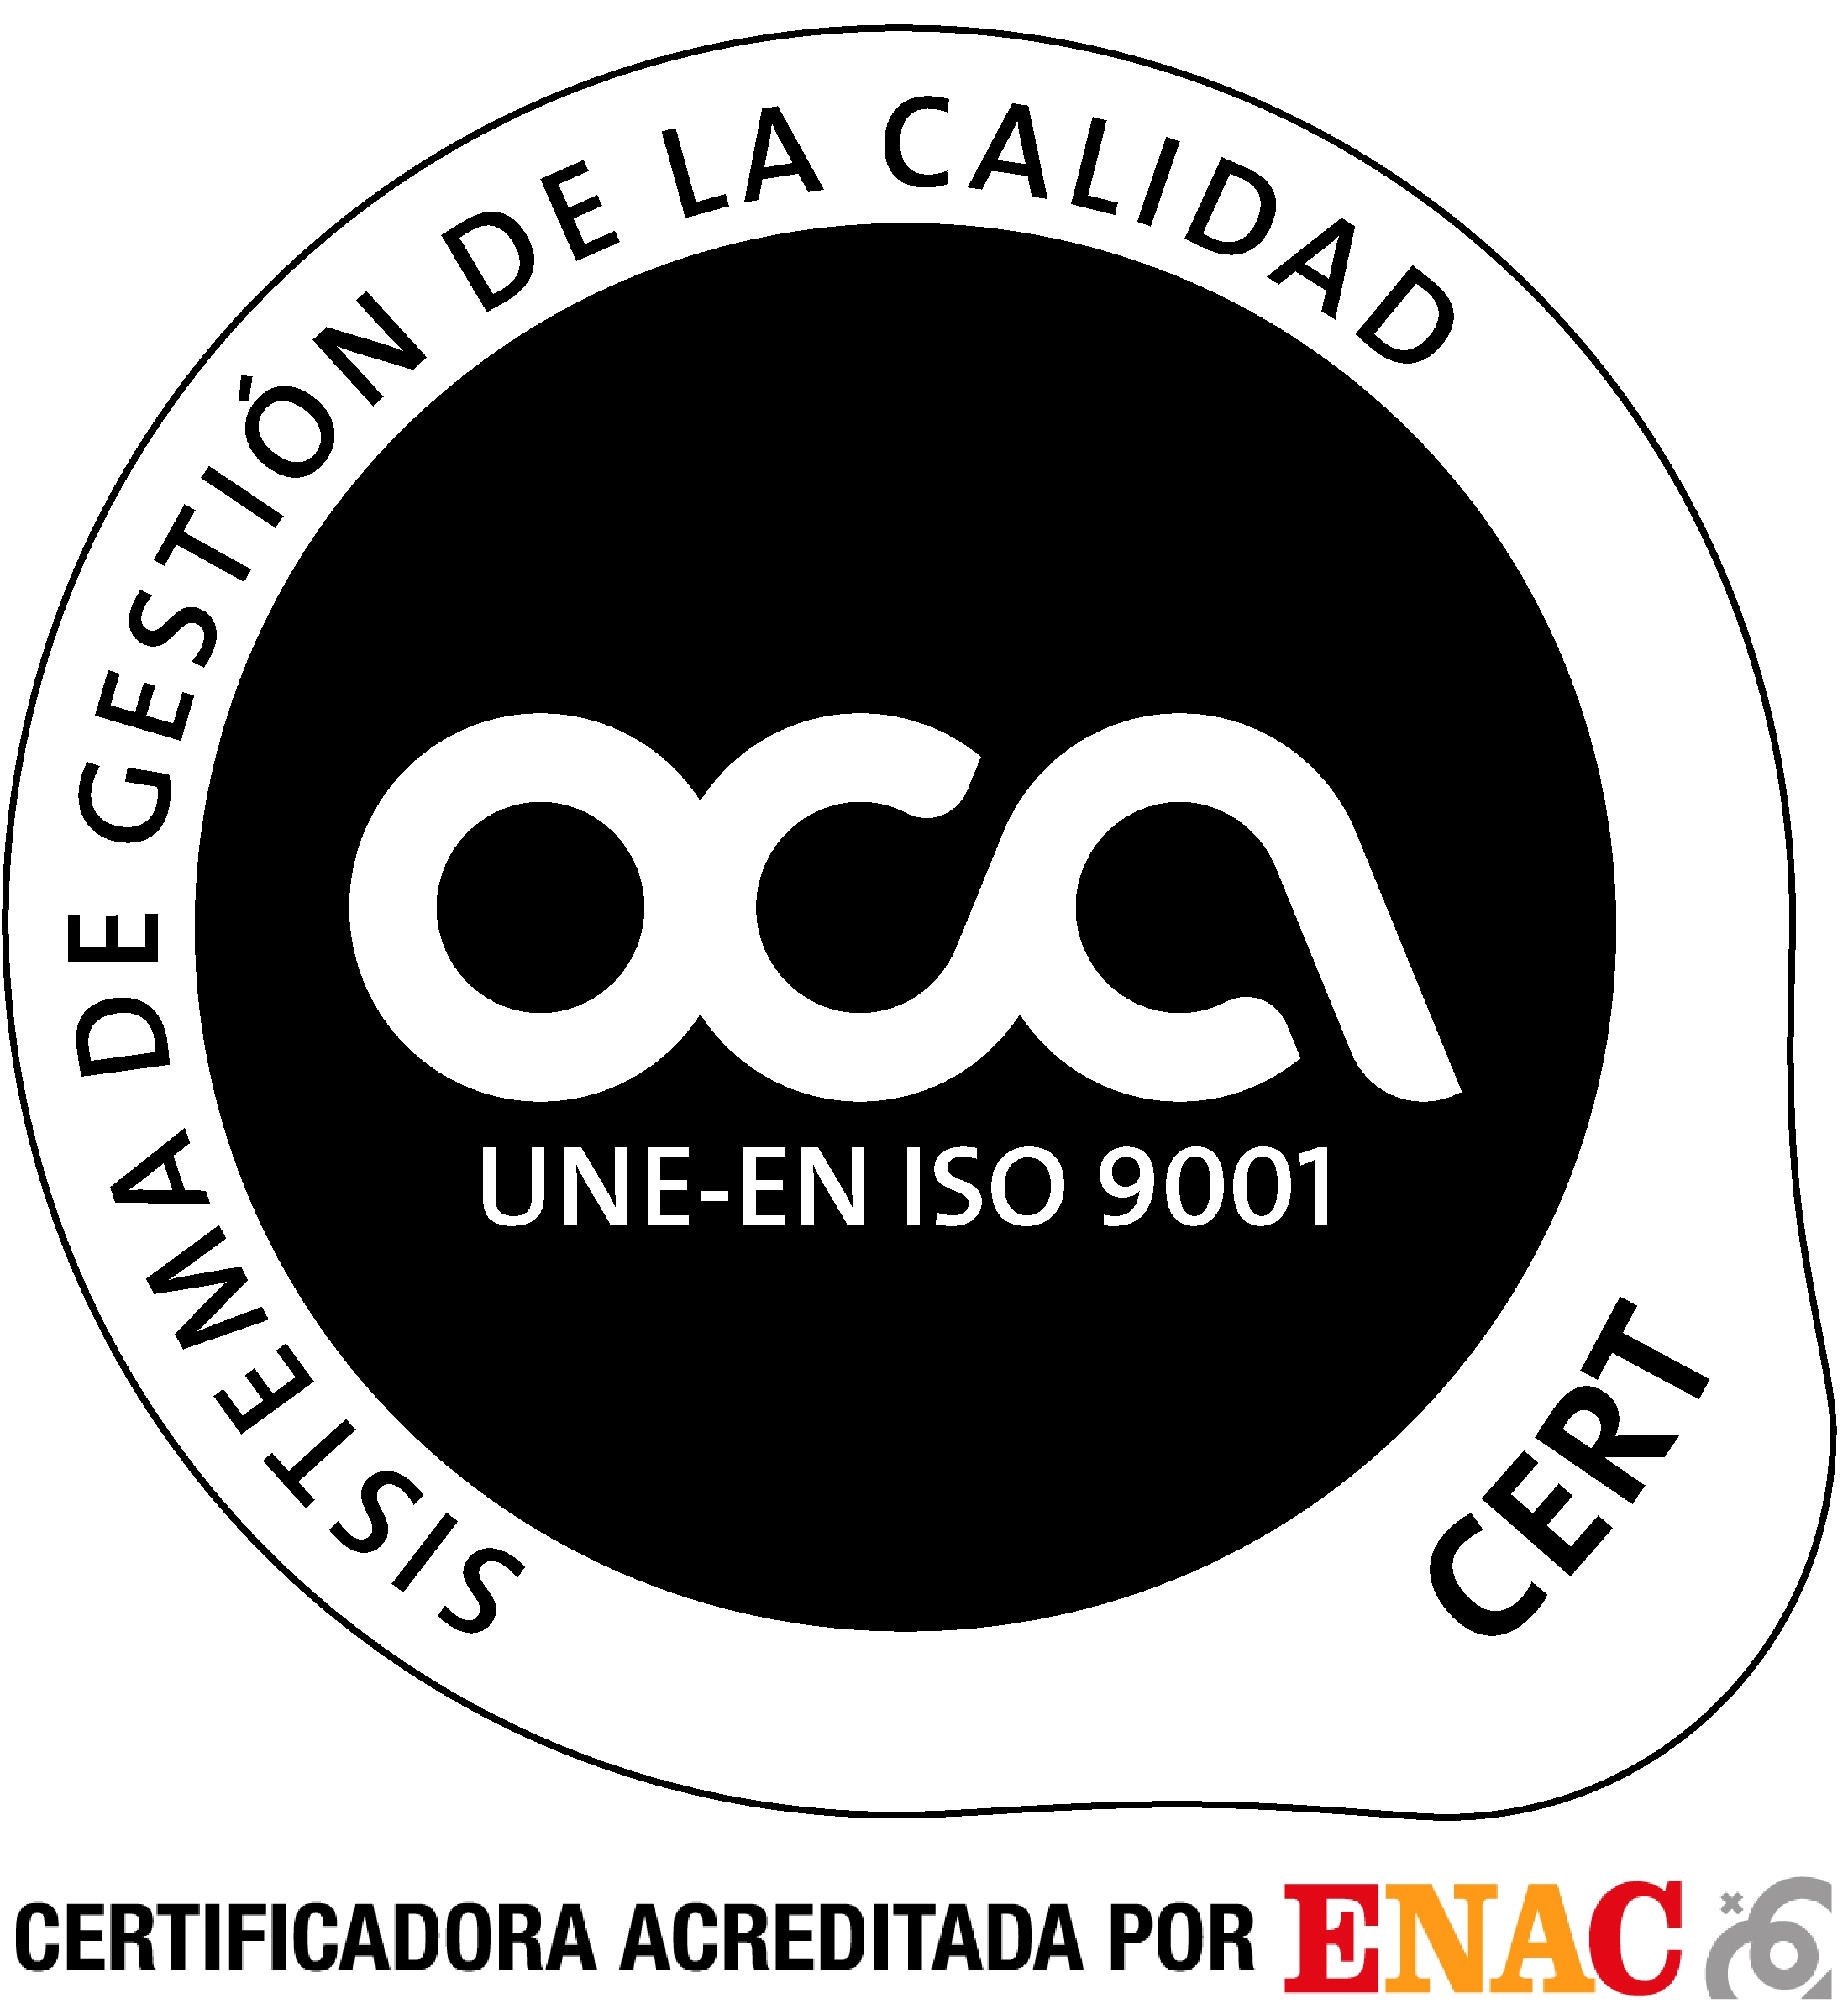 Certifiación de Calidad UNE-EN ISO 9001